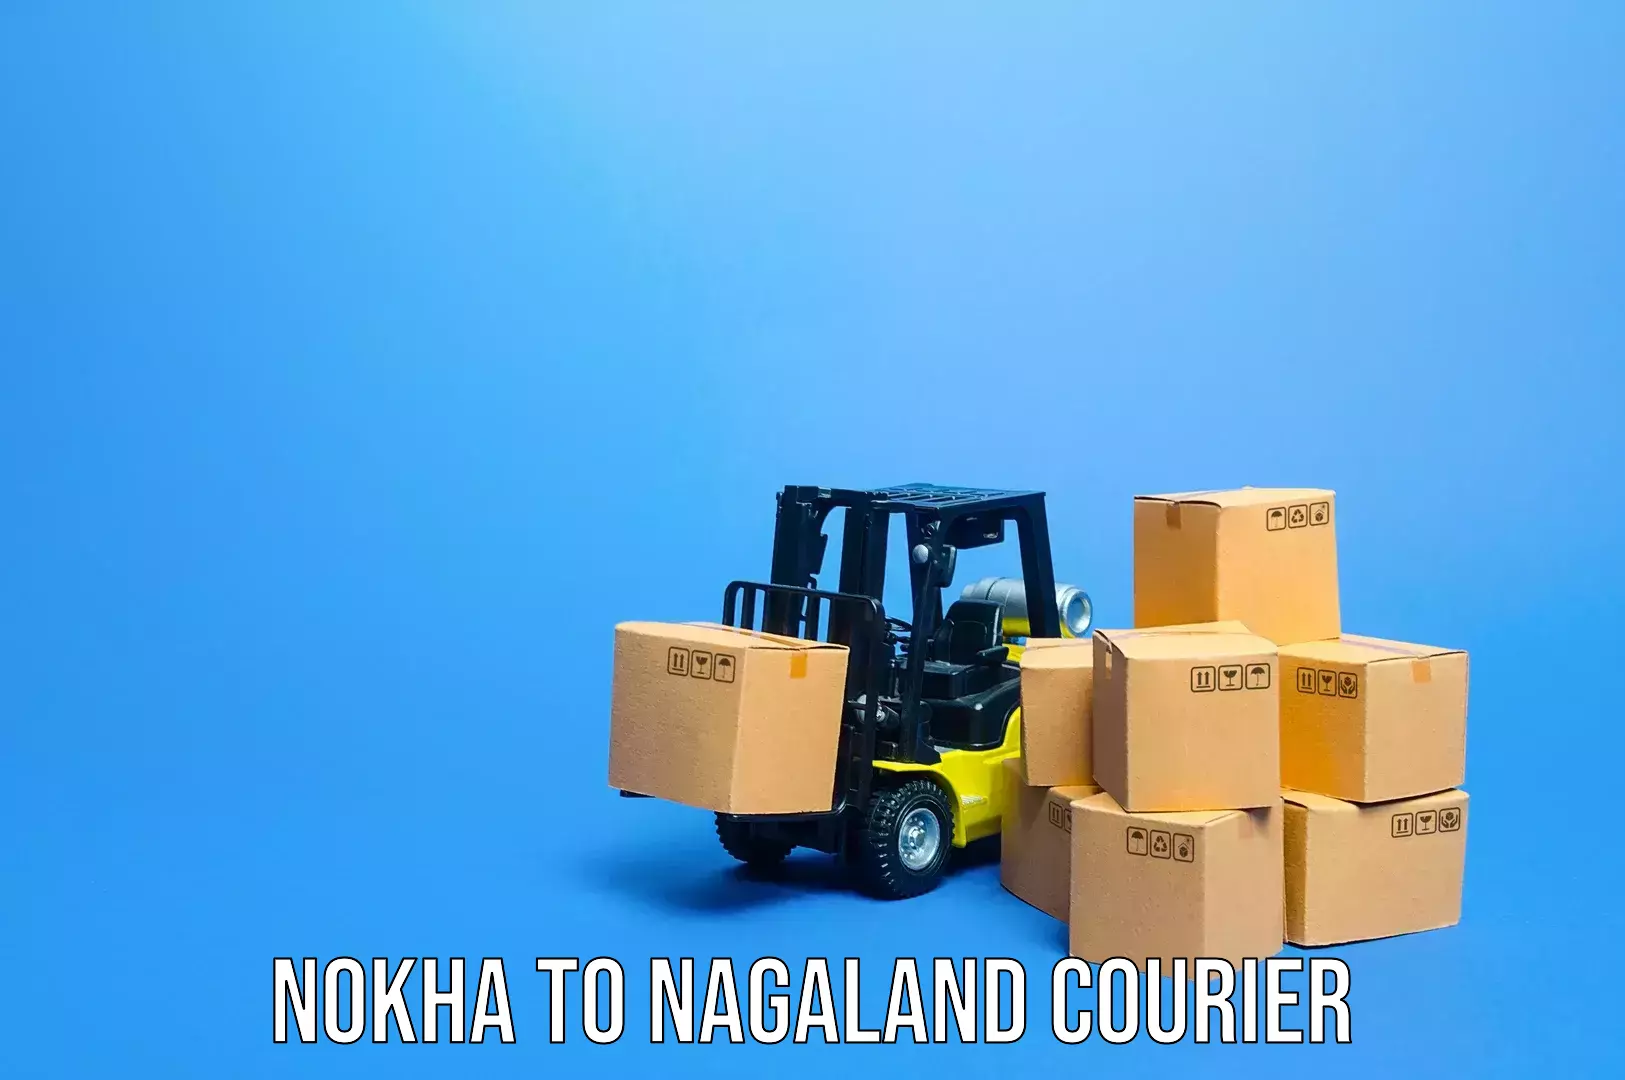 Luggage shipment tracking Nokha to Nagaland